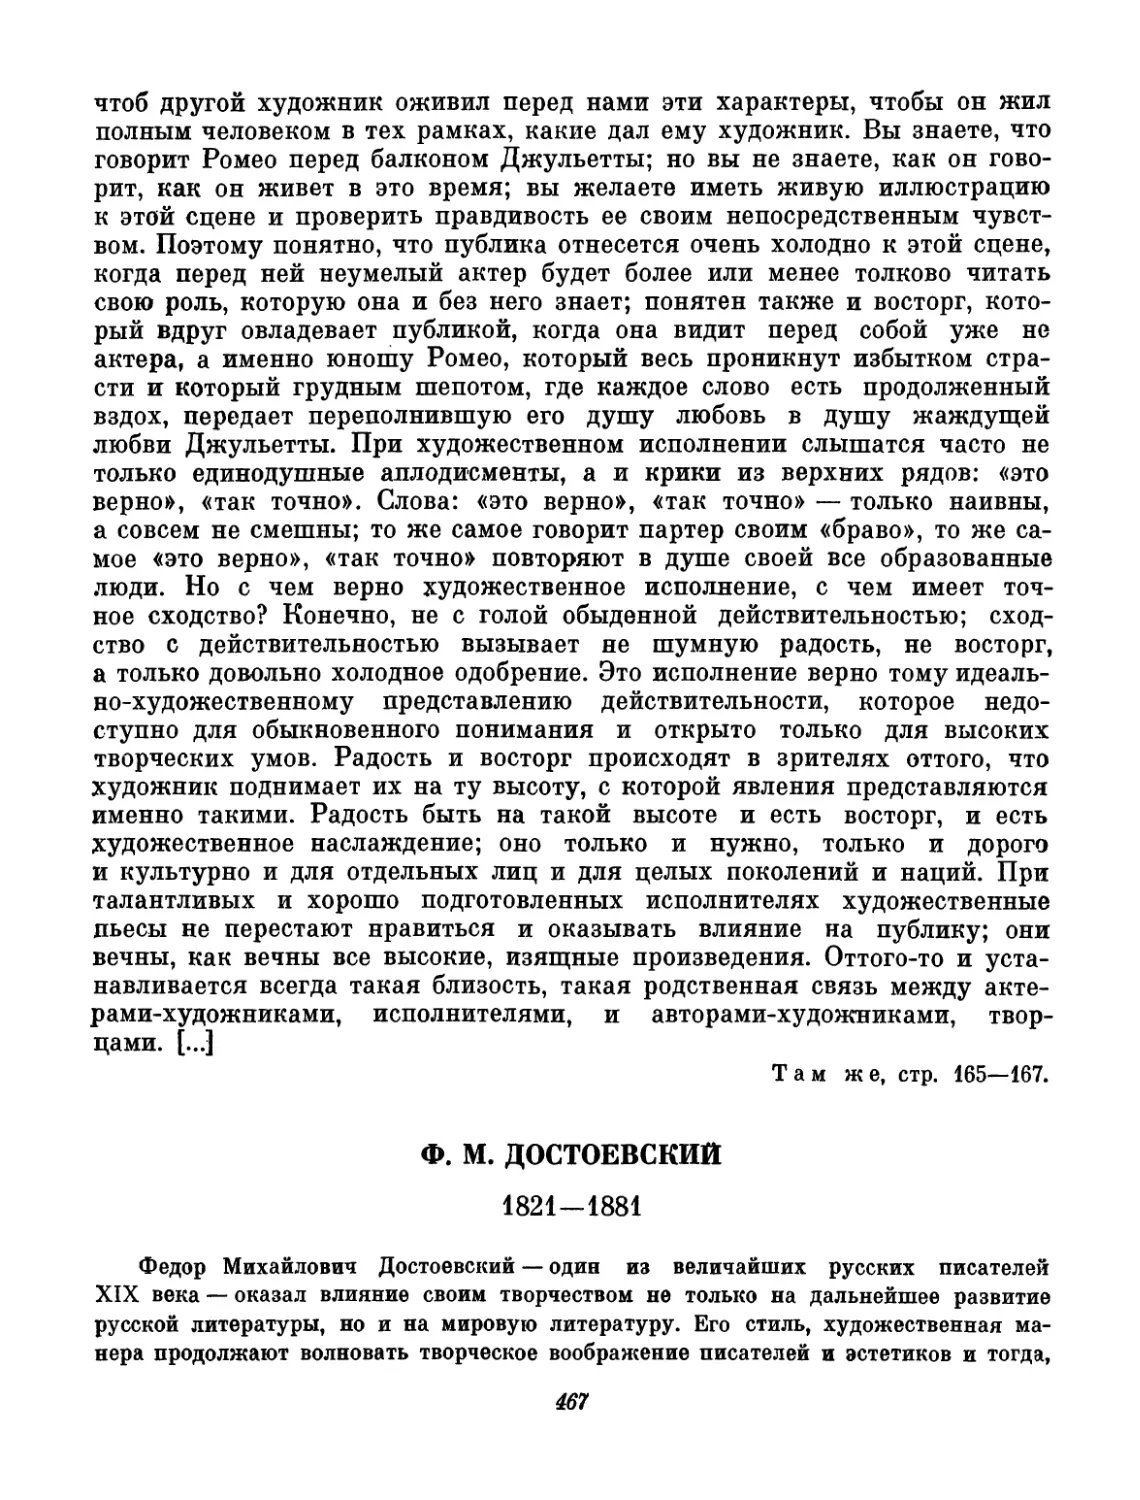 Достоевский. Вступительный текст и составление А. А. Белкина